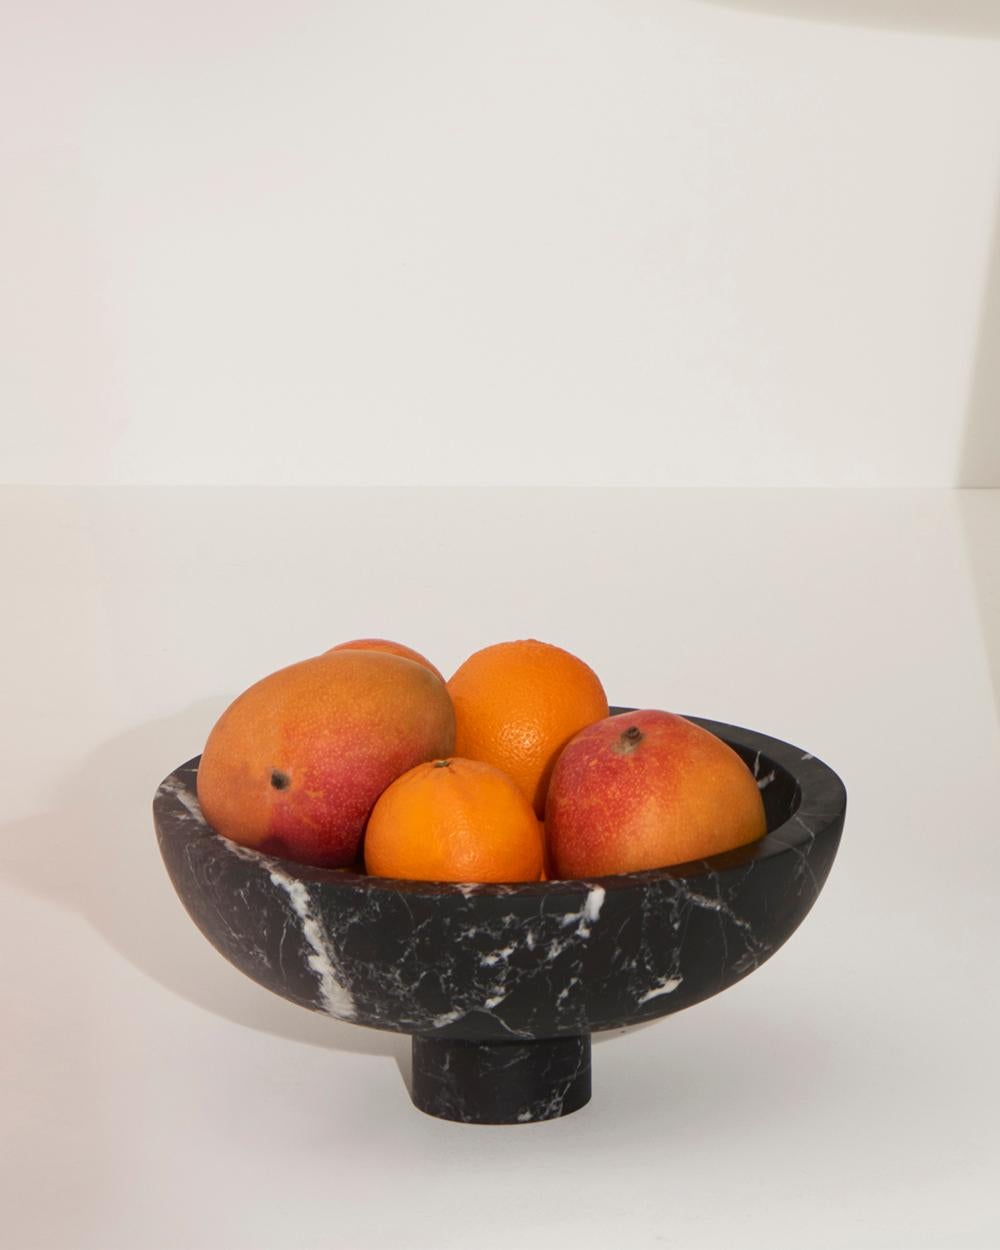 Inside Out Fruit Bowl en marbre noir Marquinia, conçu par la designer de renommée internationale Karen Chekerdjian - il est également disponible dans d'autres couleurs.
Elle fait partie de la Collection S'épanouir - tables et accessoires (coupes à